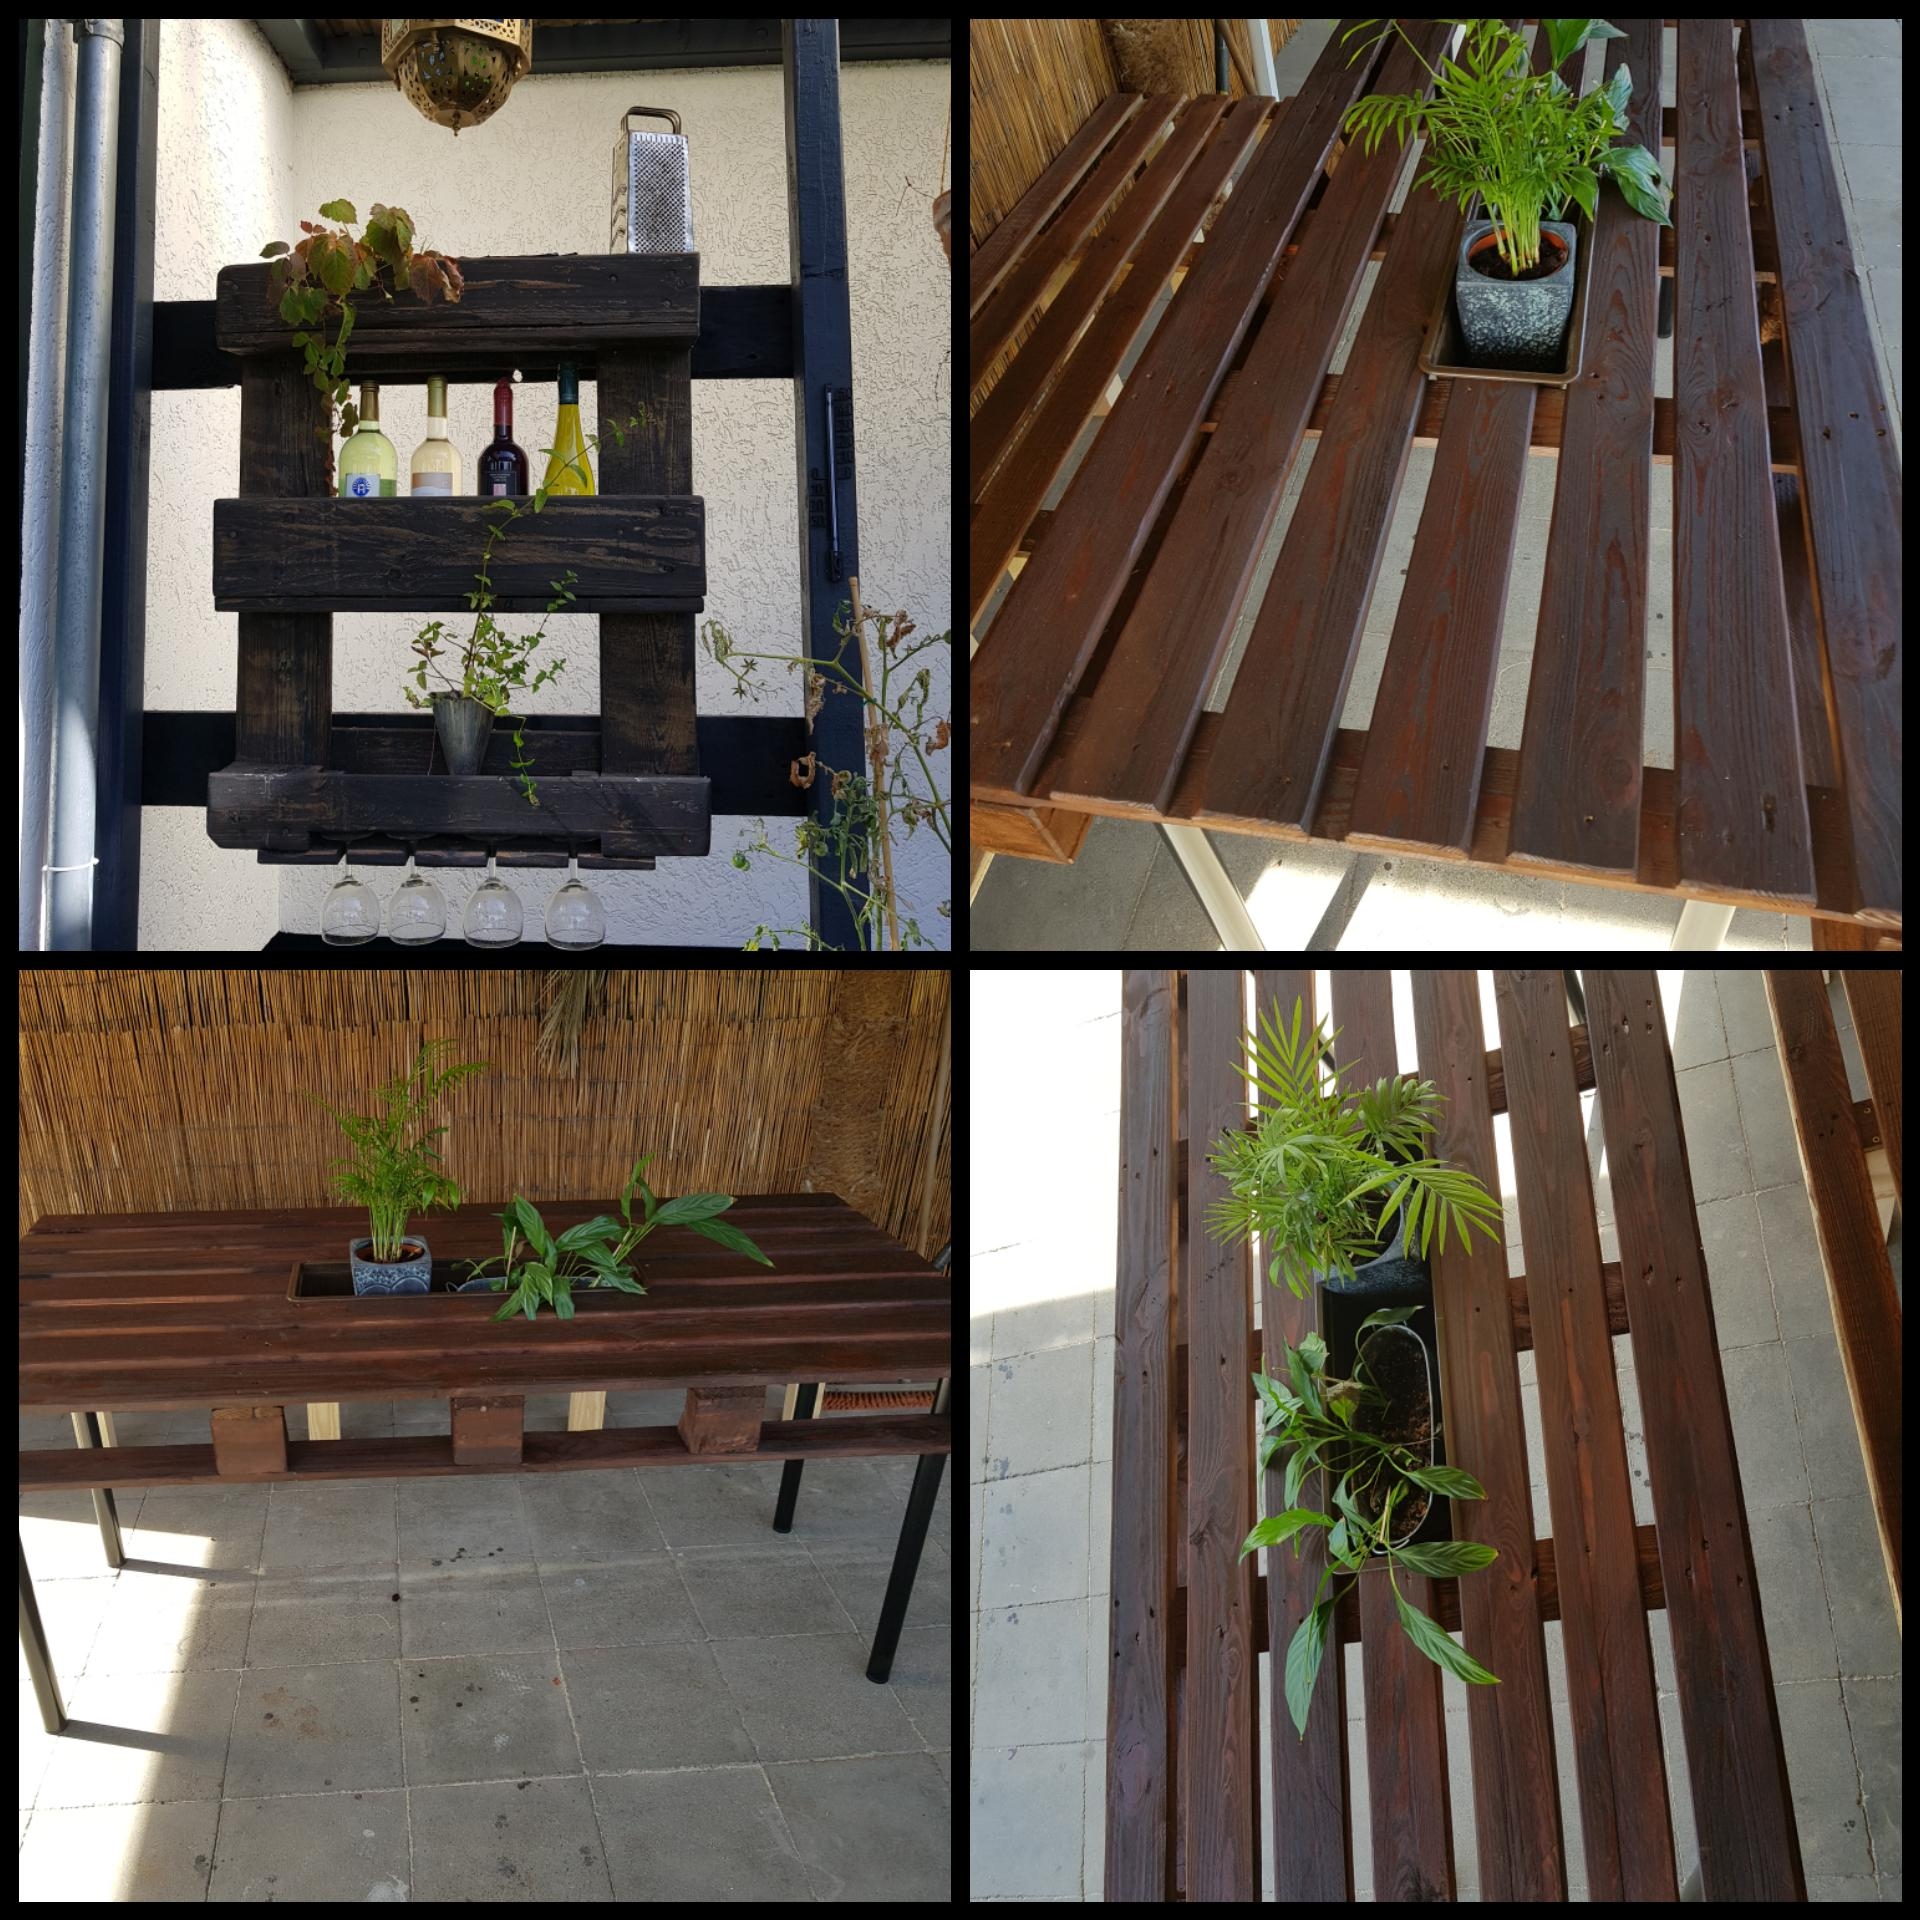 Meine Gartenmöbel von letzten Jahr 😊 
#diy #upcycling #palettenmöbel #möbelmädchen #gartenmöbel #sommer